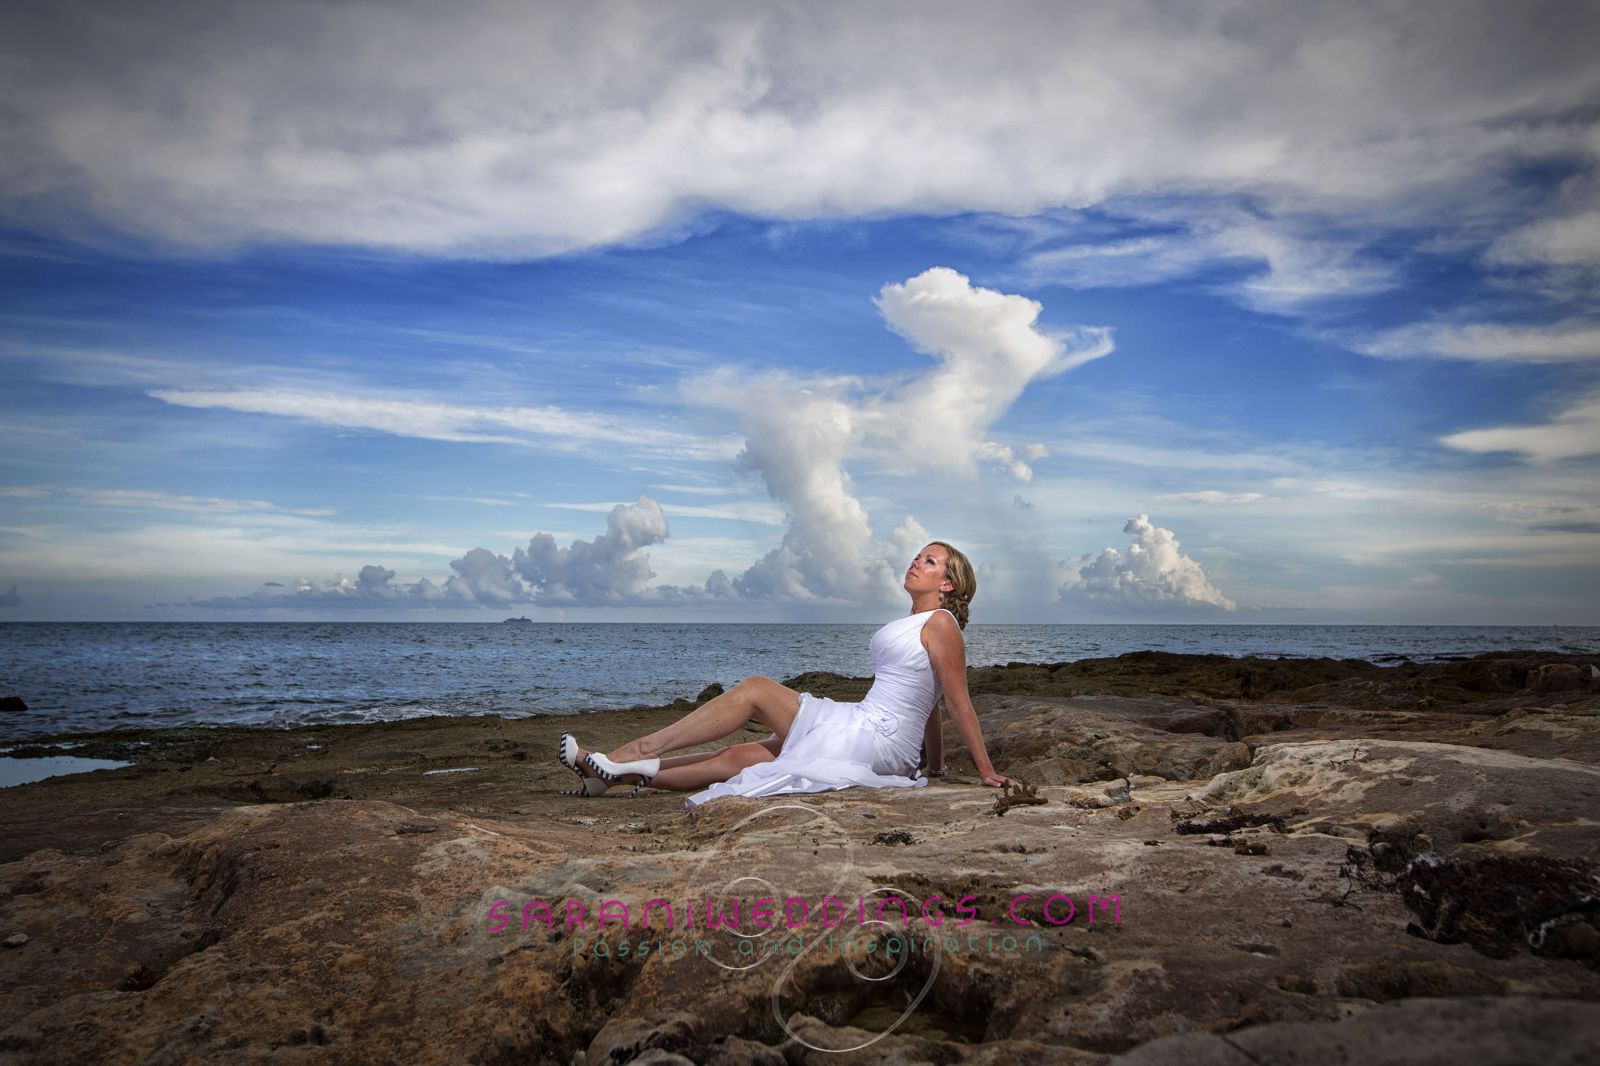 El Dorado Royale - Bride Photography in Mayan Riviera
Photography by Sarani E.